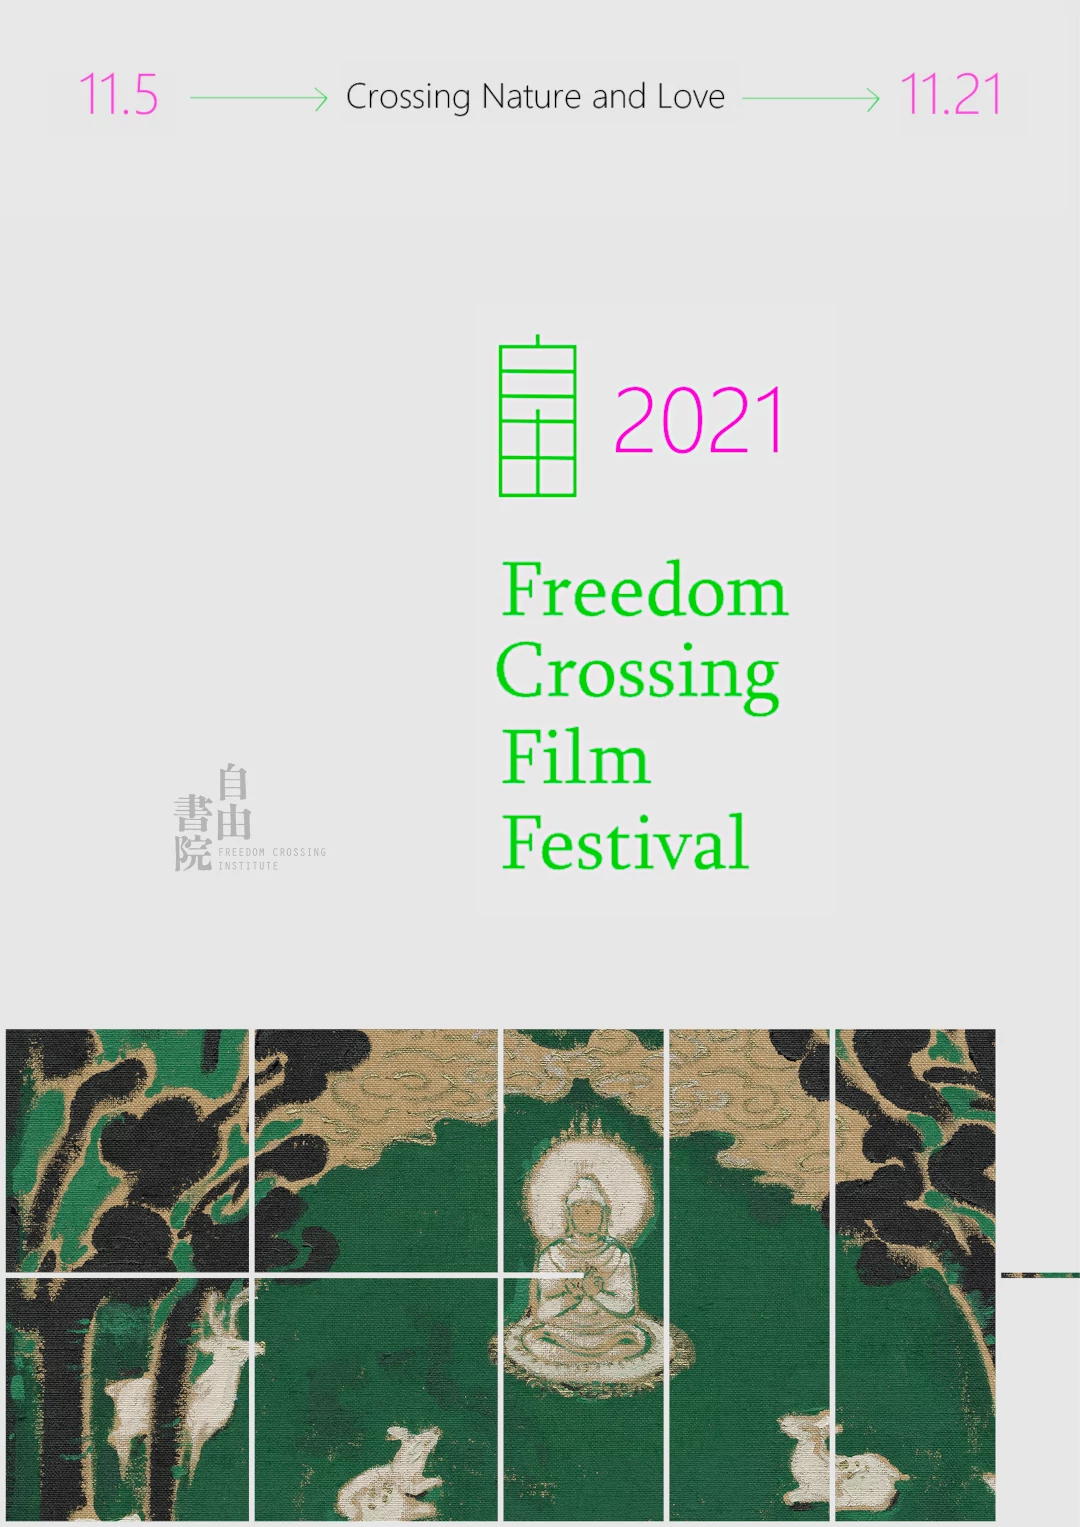 2021 Freedom Crossing Film Festival